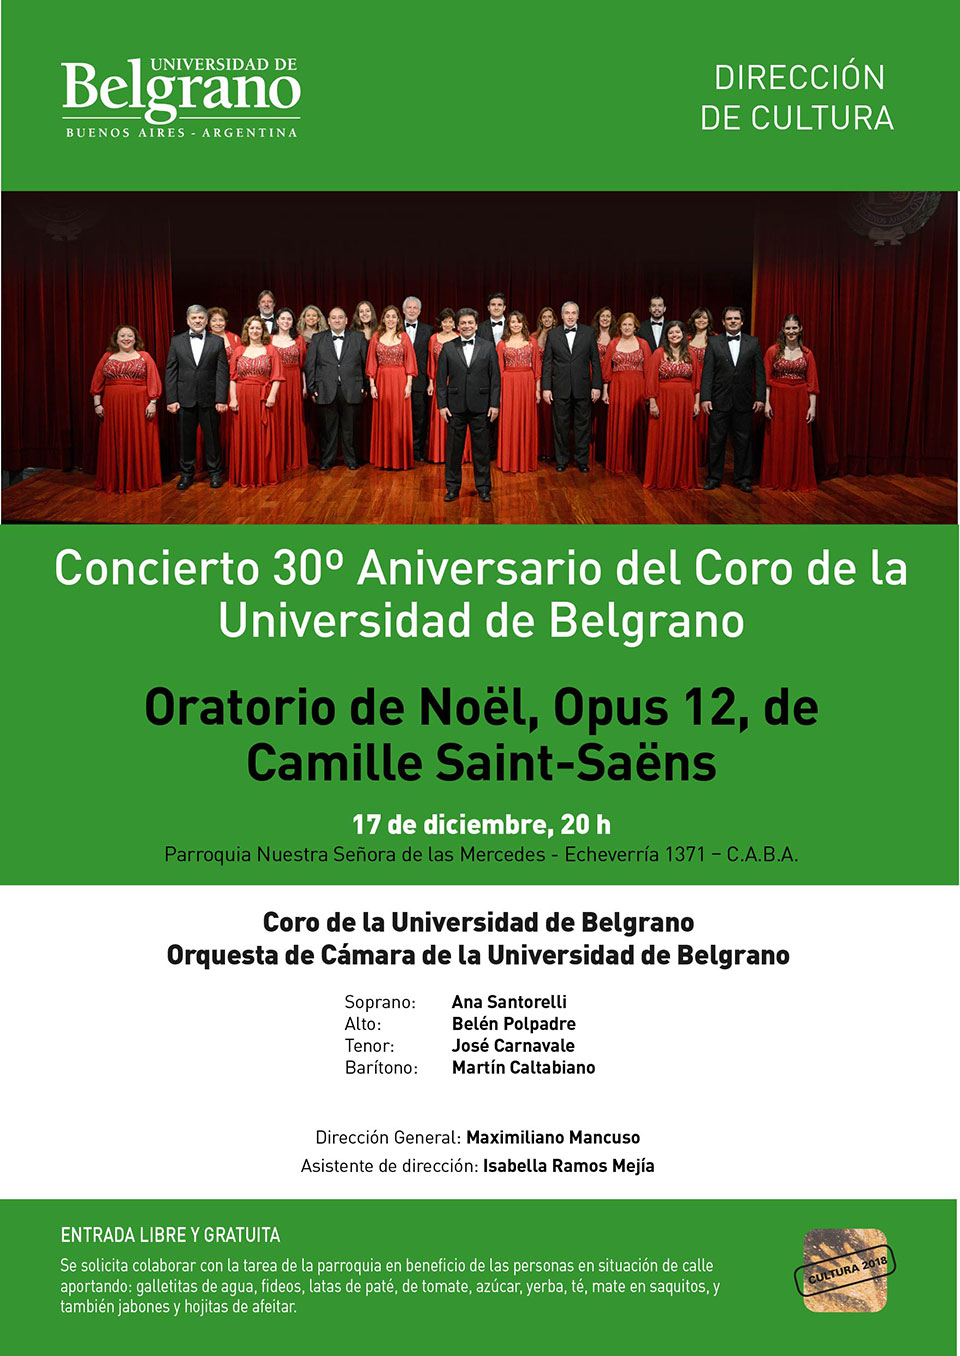 Concierto 30º Aniversario del Coro de la Universidad de Belgrano